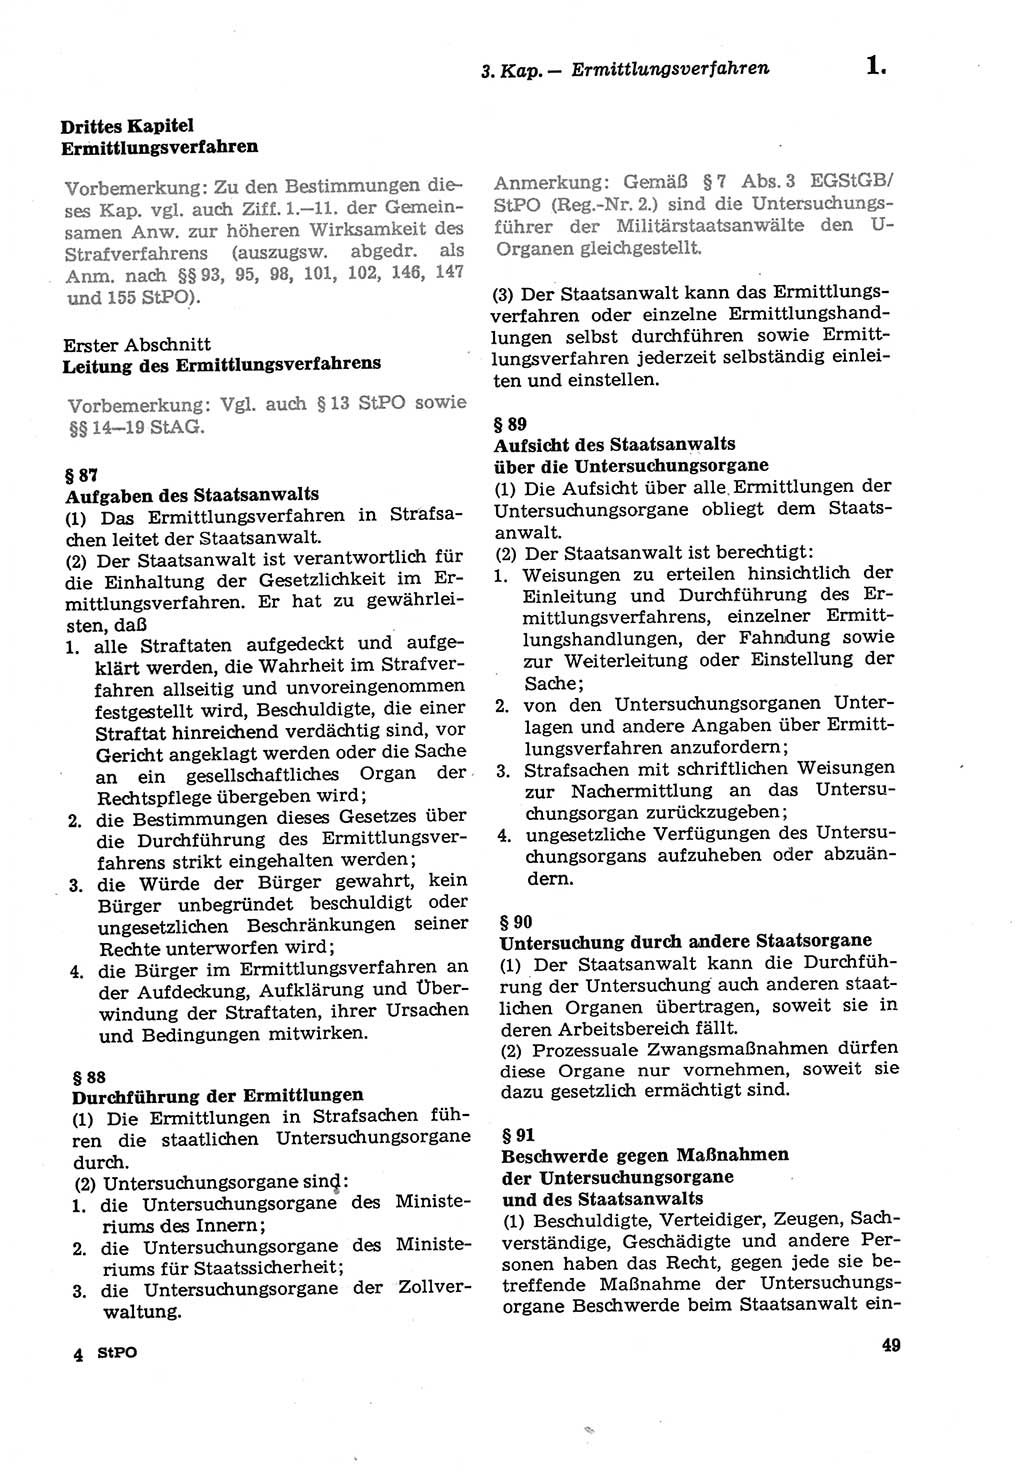 Strafprozeßordnung (StPO) der Deutschen Demokratischen Republik (DDR) sowie angrenzende Gesetze und Bestimmungen 1979, Seite 49 (StPO DDR Ges. Best. 1979, S. 49)